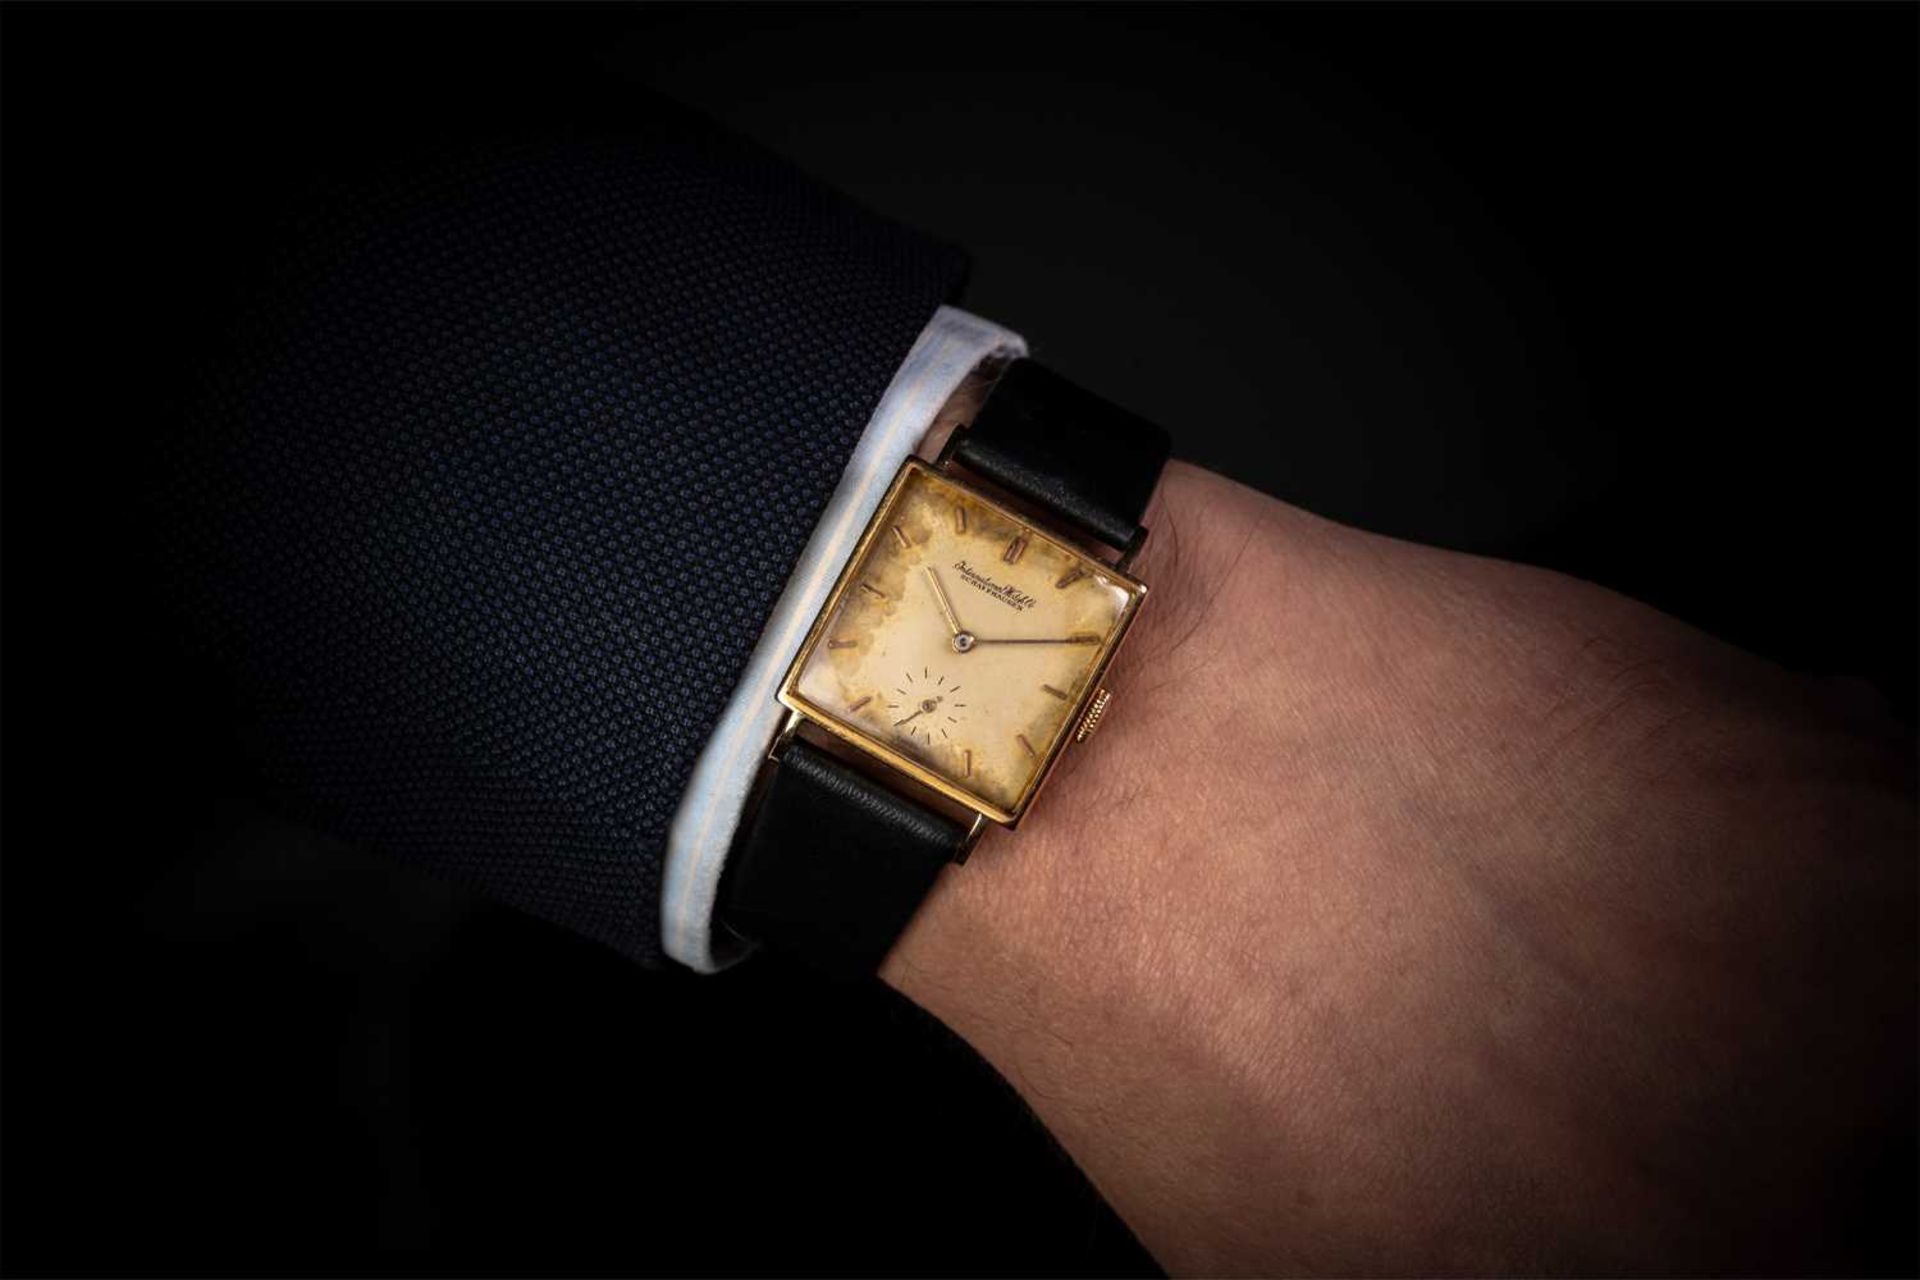 An International Watch Co. IWC wristwatch, featuring a swiss-made hand-wound mechanical movement